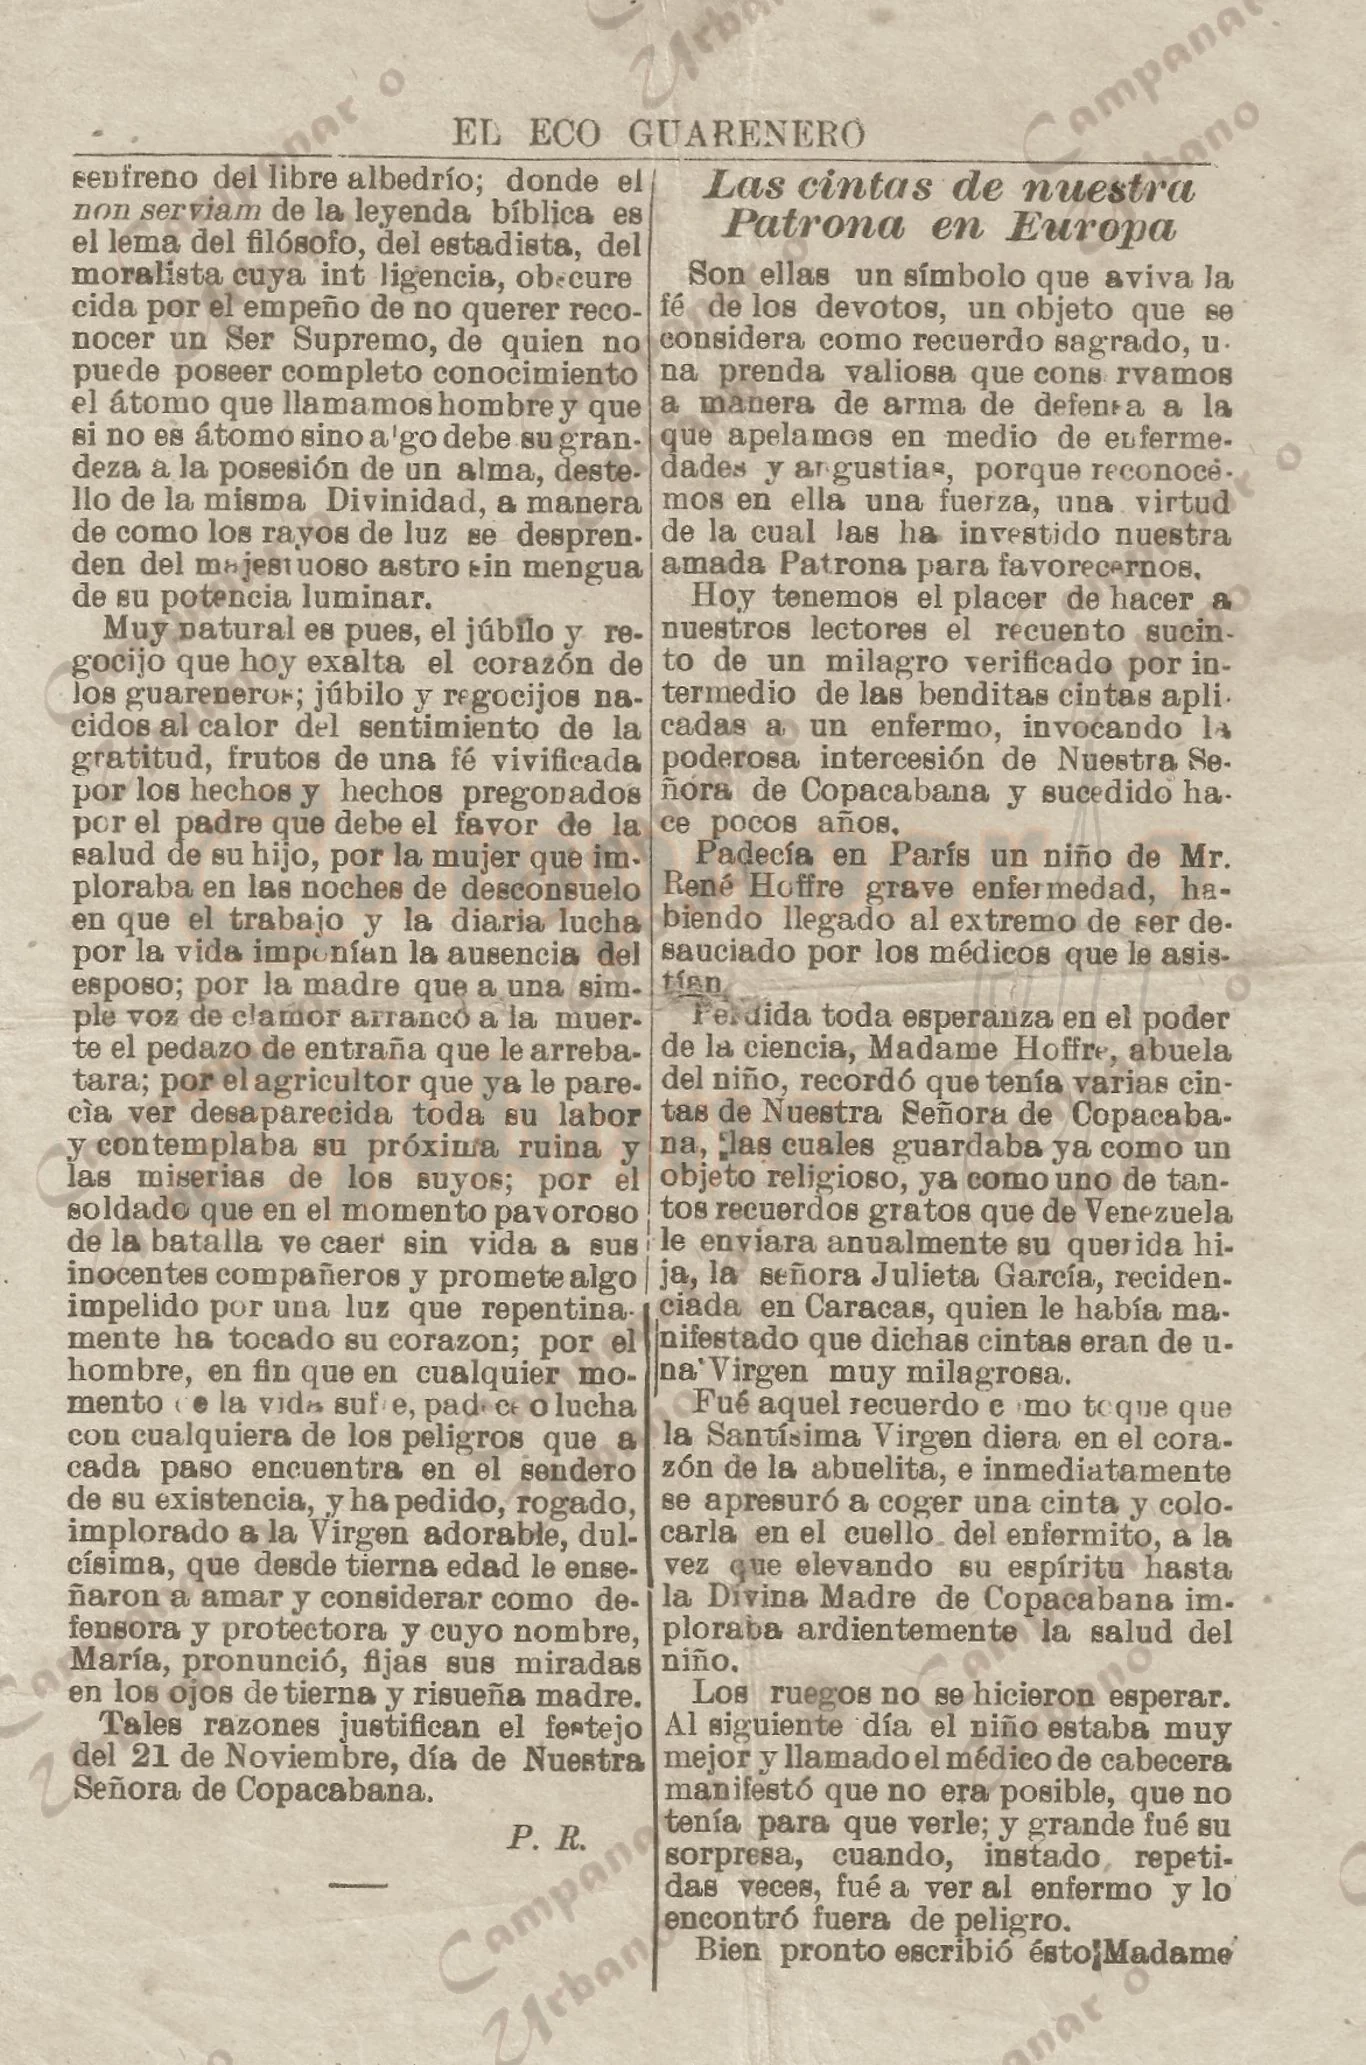 Periódico "El Eco Guarenero", edición 34, 21 de noviembre de 1913, Guarenas. Las Cintas de Nuestra Patrona en Europa